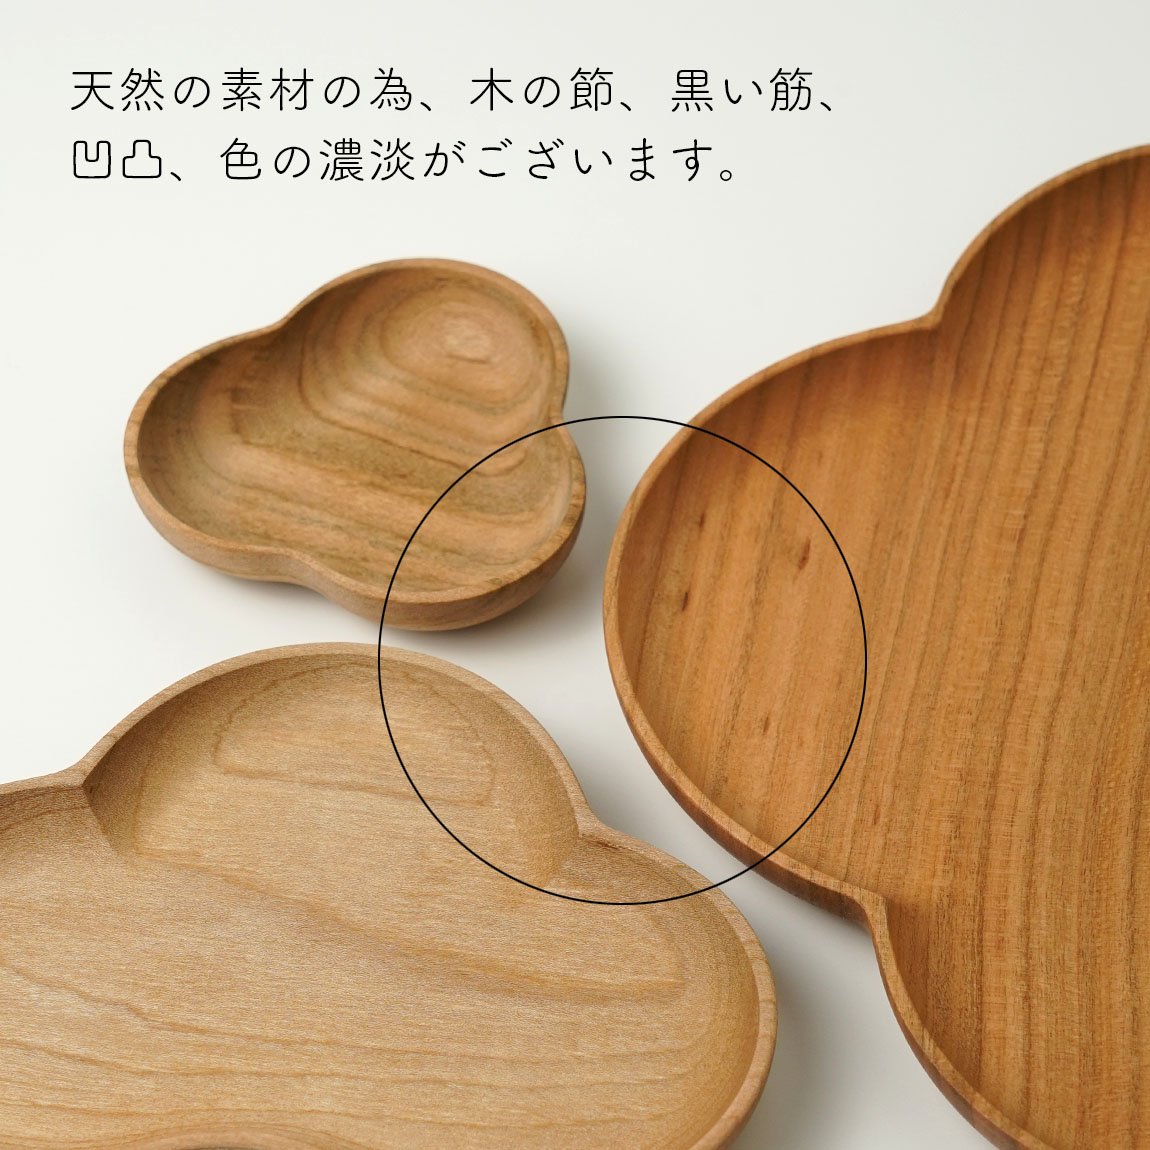 四十沢木材工芸 輪花盆 ケヤキ 木製トレー11